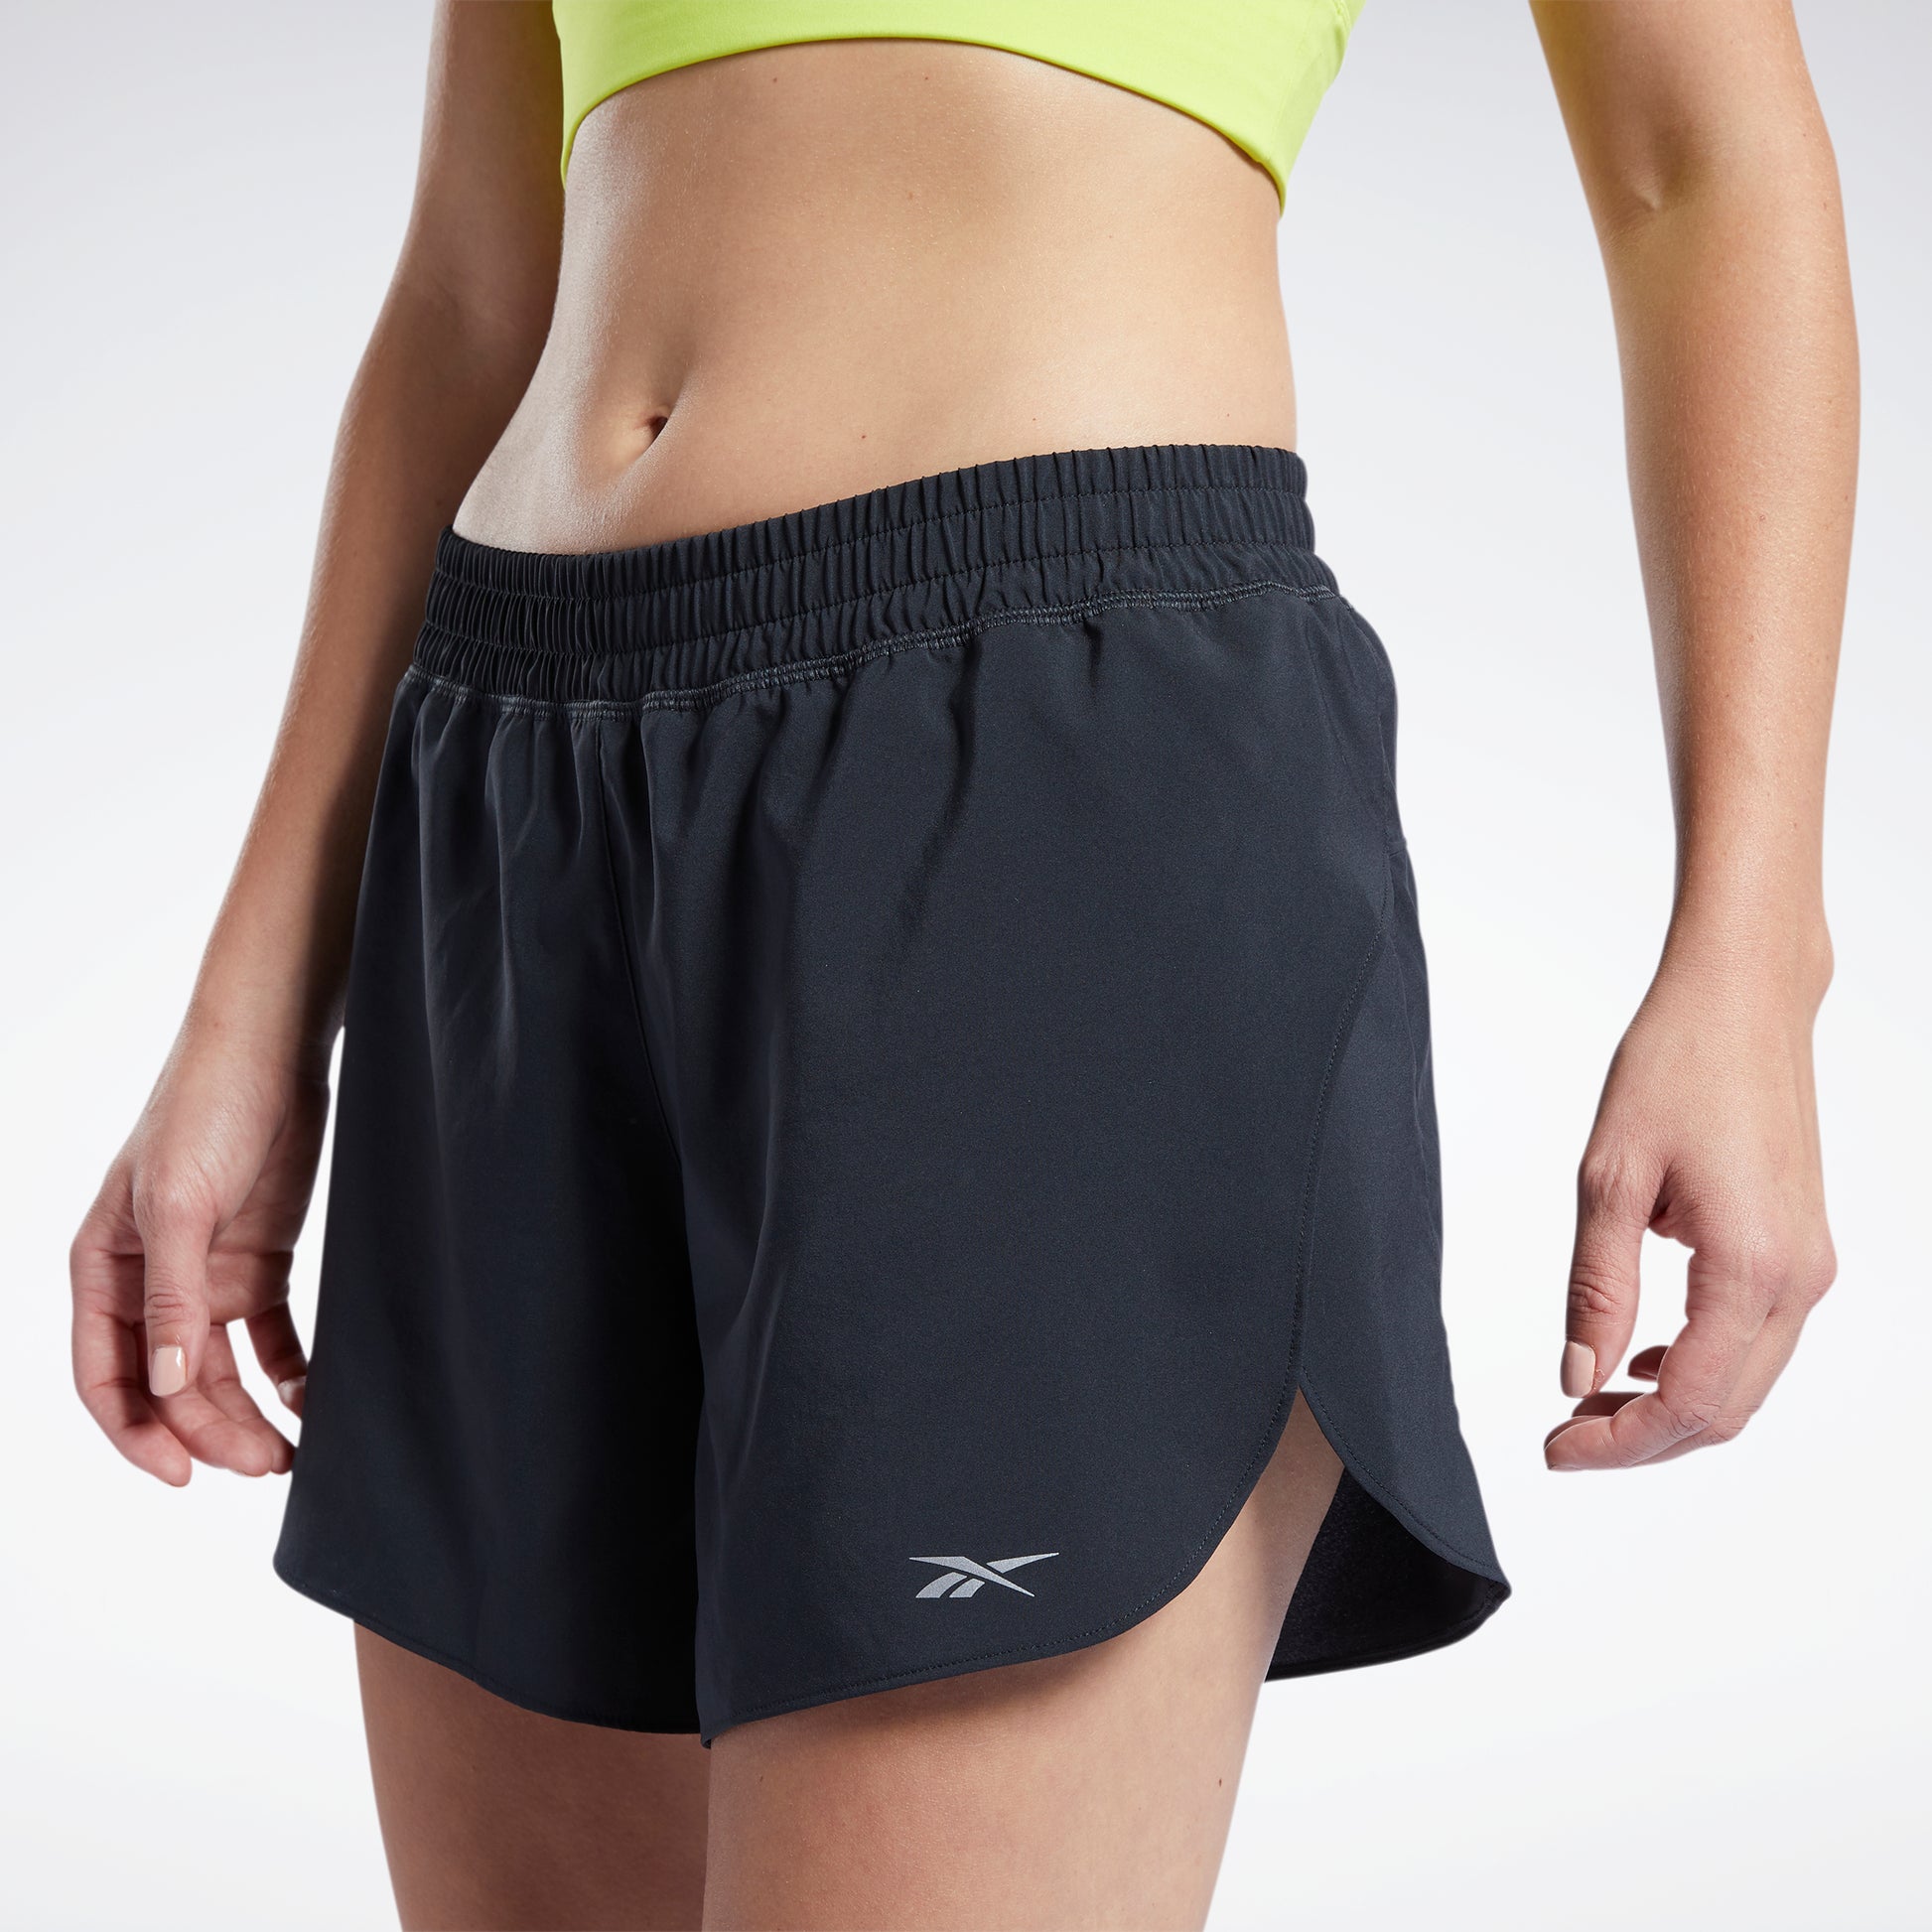 Buy The Run Shorts for women